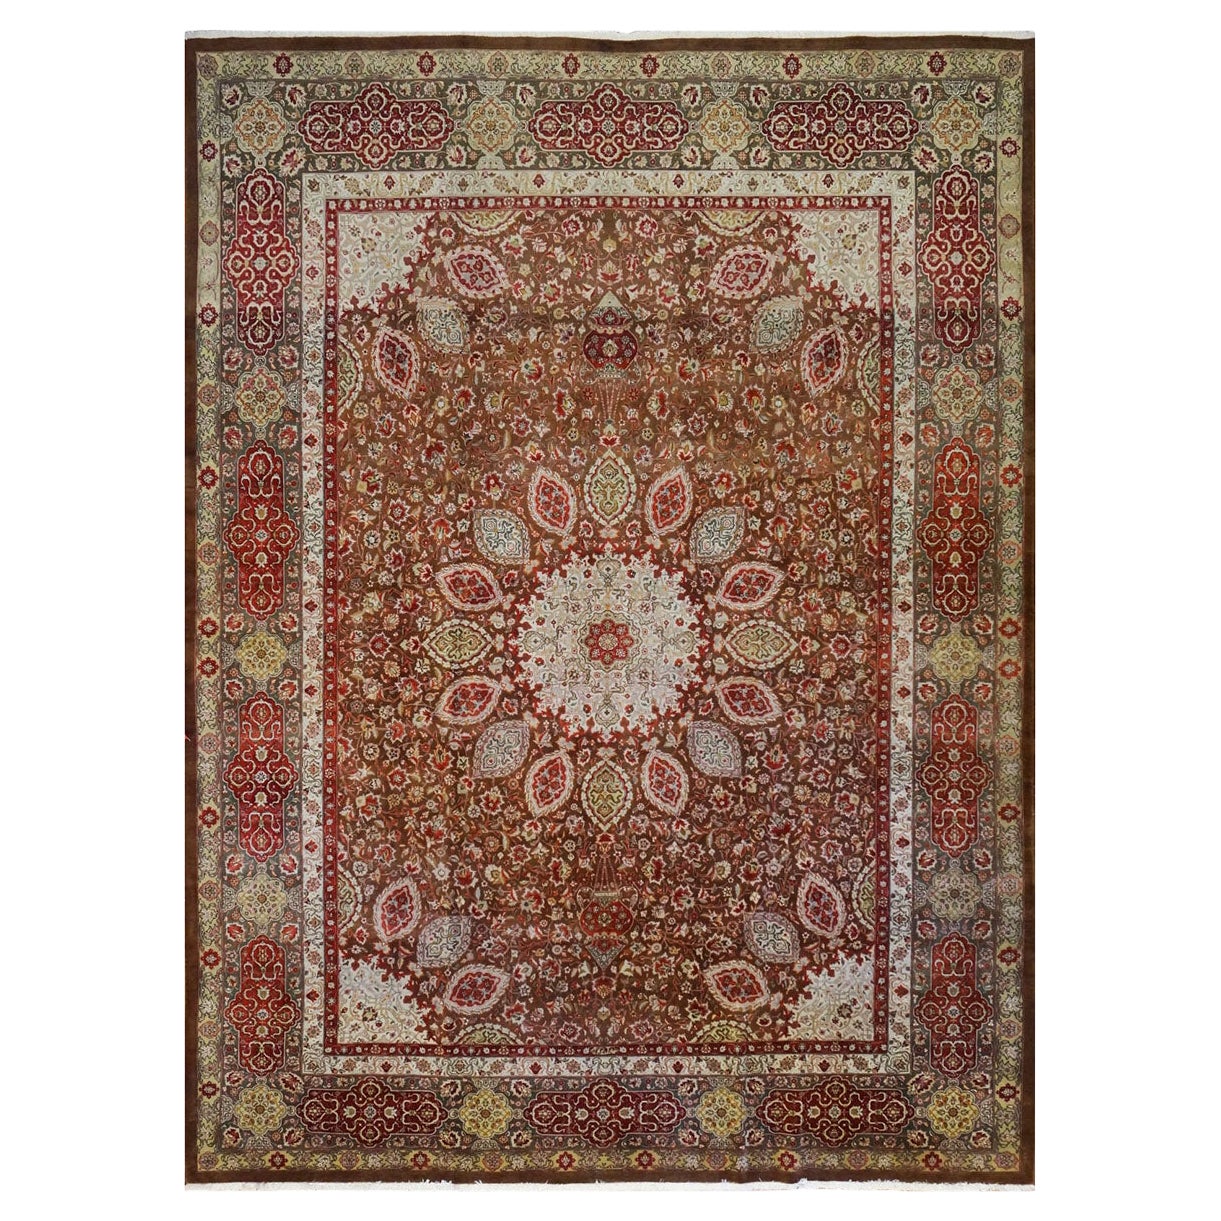 Antiker persischer Tabriz-Teppich 10x14 aus den 1930er Jahren, braun, rot und dunkelgrün, handgefertigt